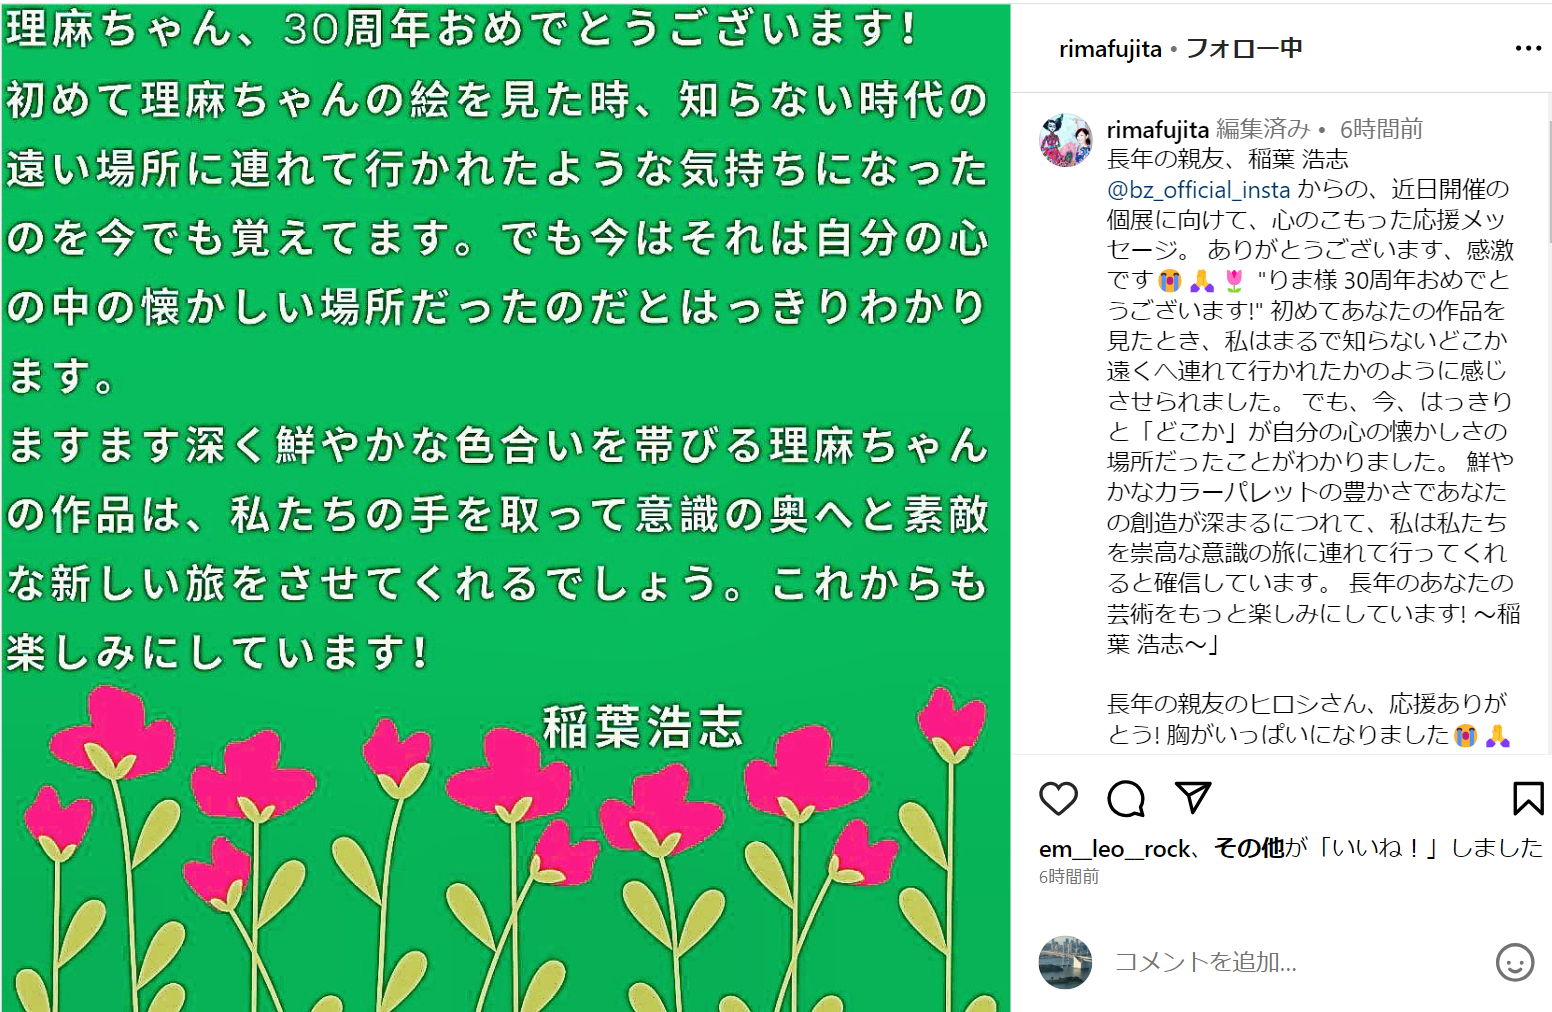 B'z稲葉浩志が藤田理麻氏の個展に贈ったとされるメッセージが掲載されたInstagram投稿